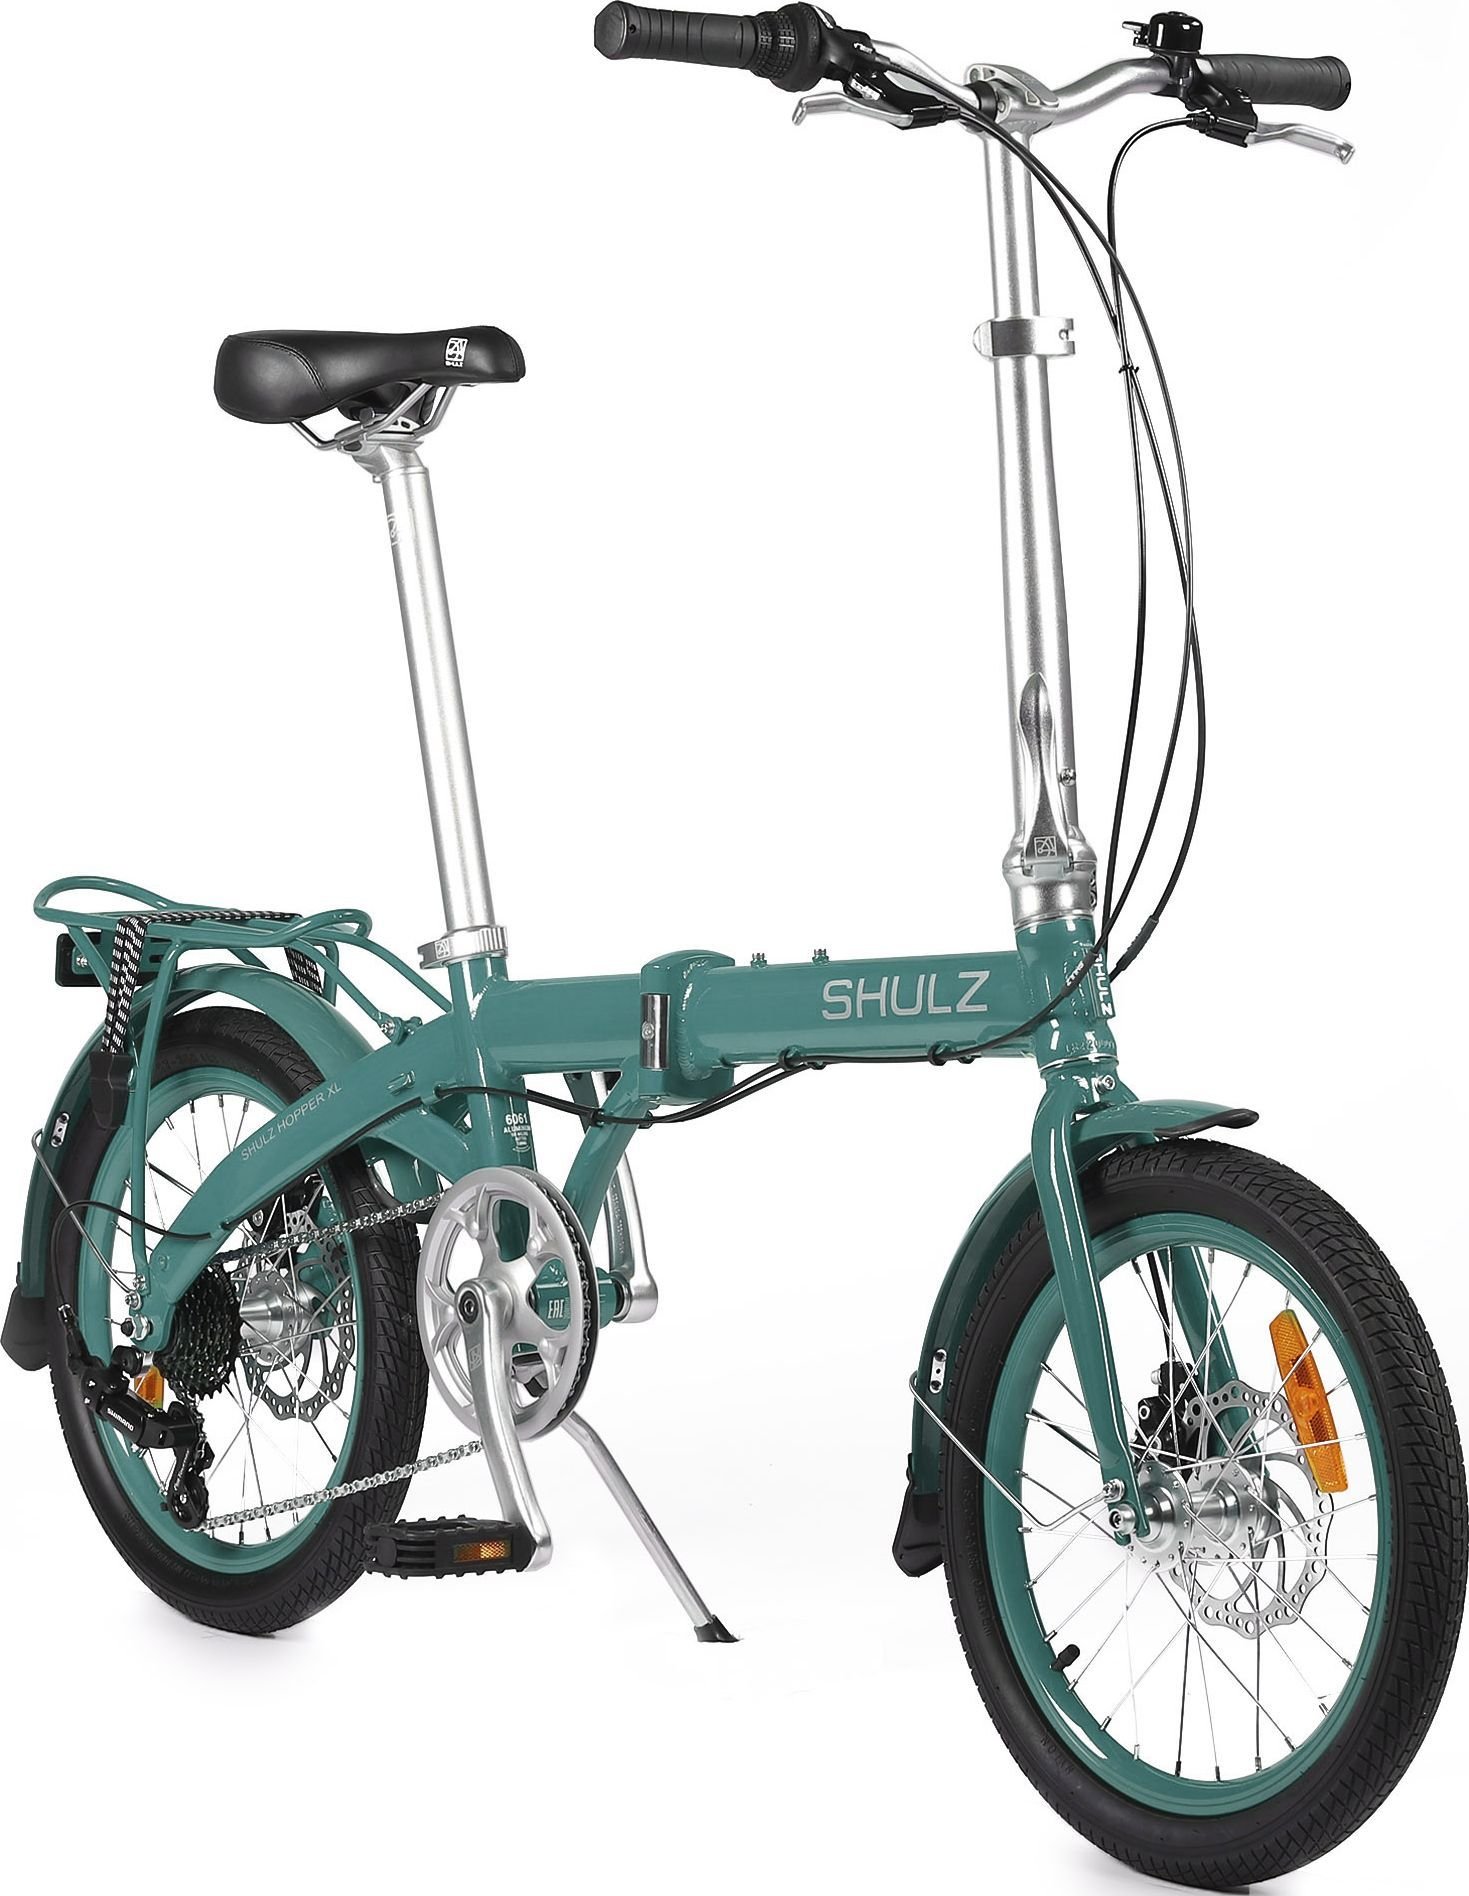 Складной велосипед шульц купить. Шульц велосипед 20 складной. Велосипед Shulz Hopper. Велосипед Шульц хоппер мини. Велосипед Шульц 12 дюймов складной.